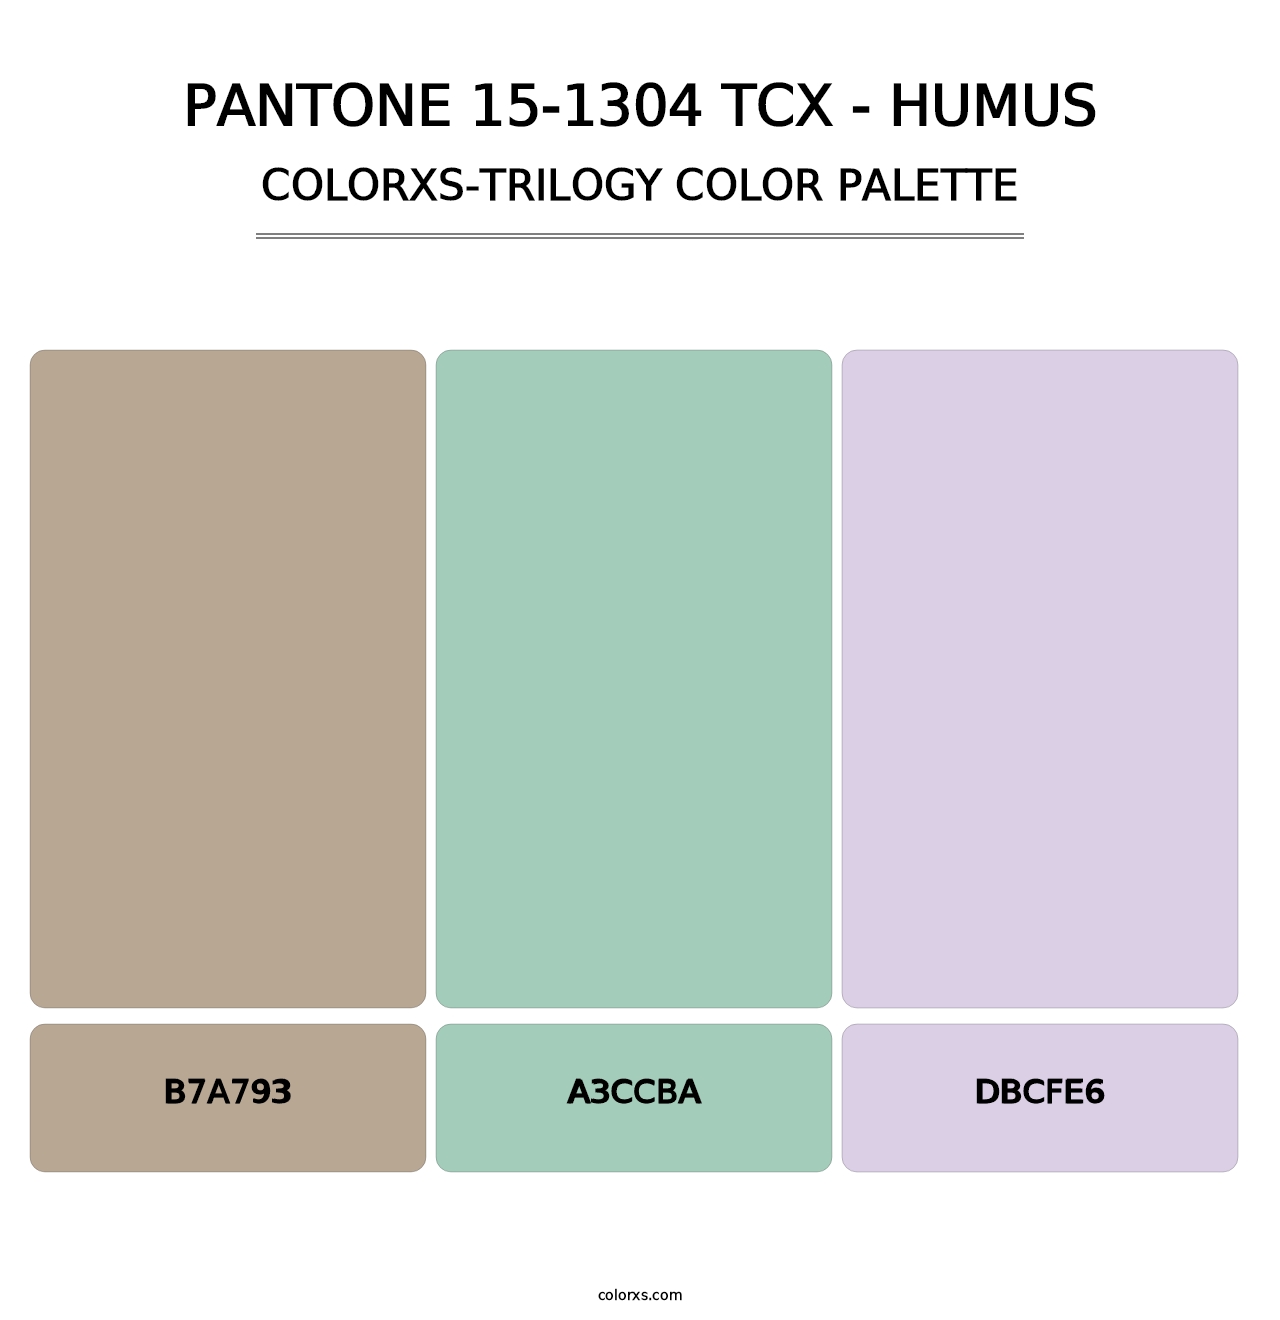 PANTONE 15-1304 TCX - Humus - Colorxs Trilogy Palette